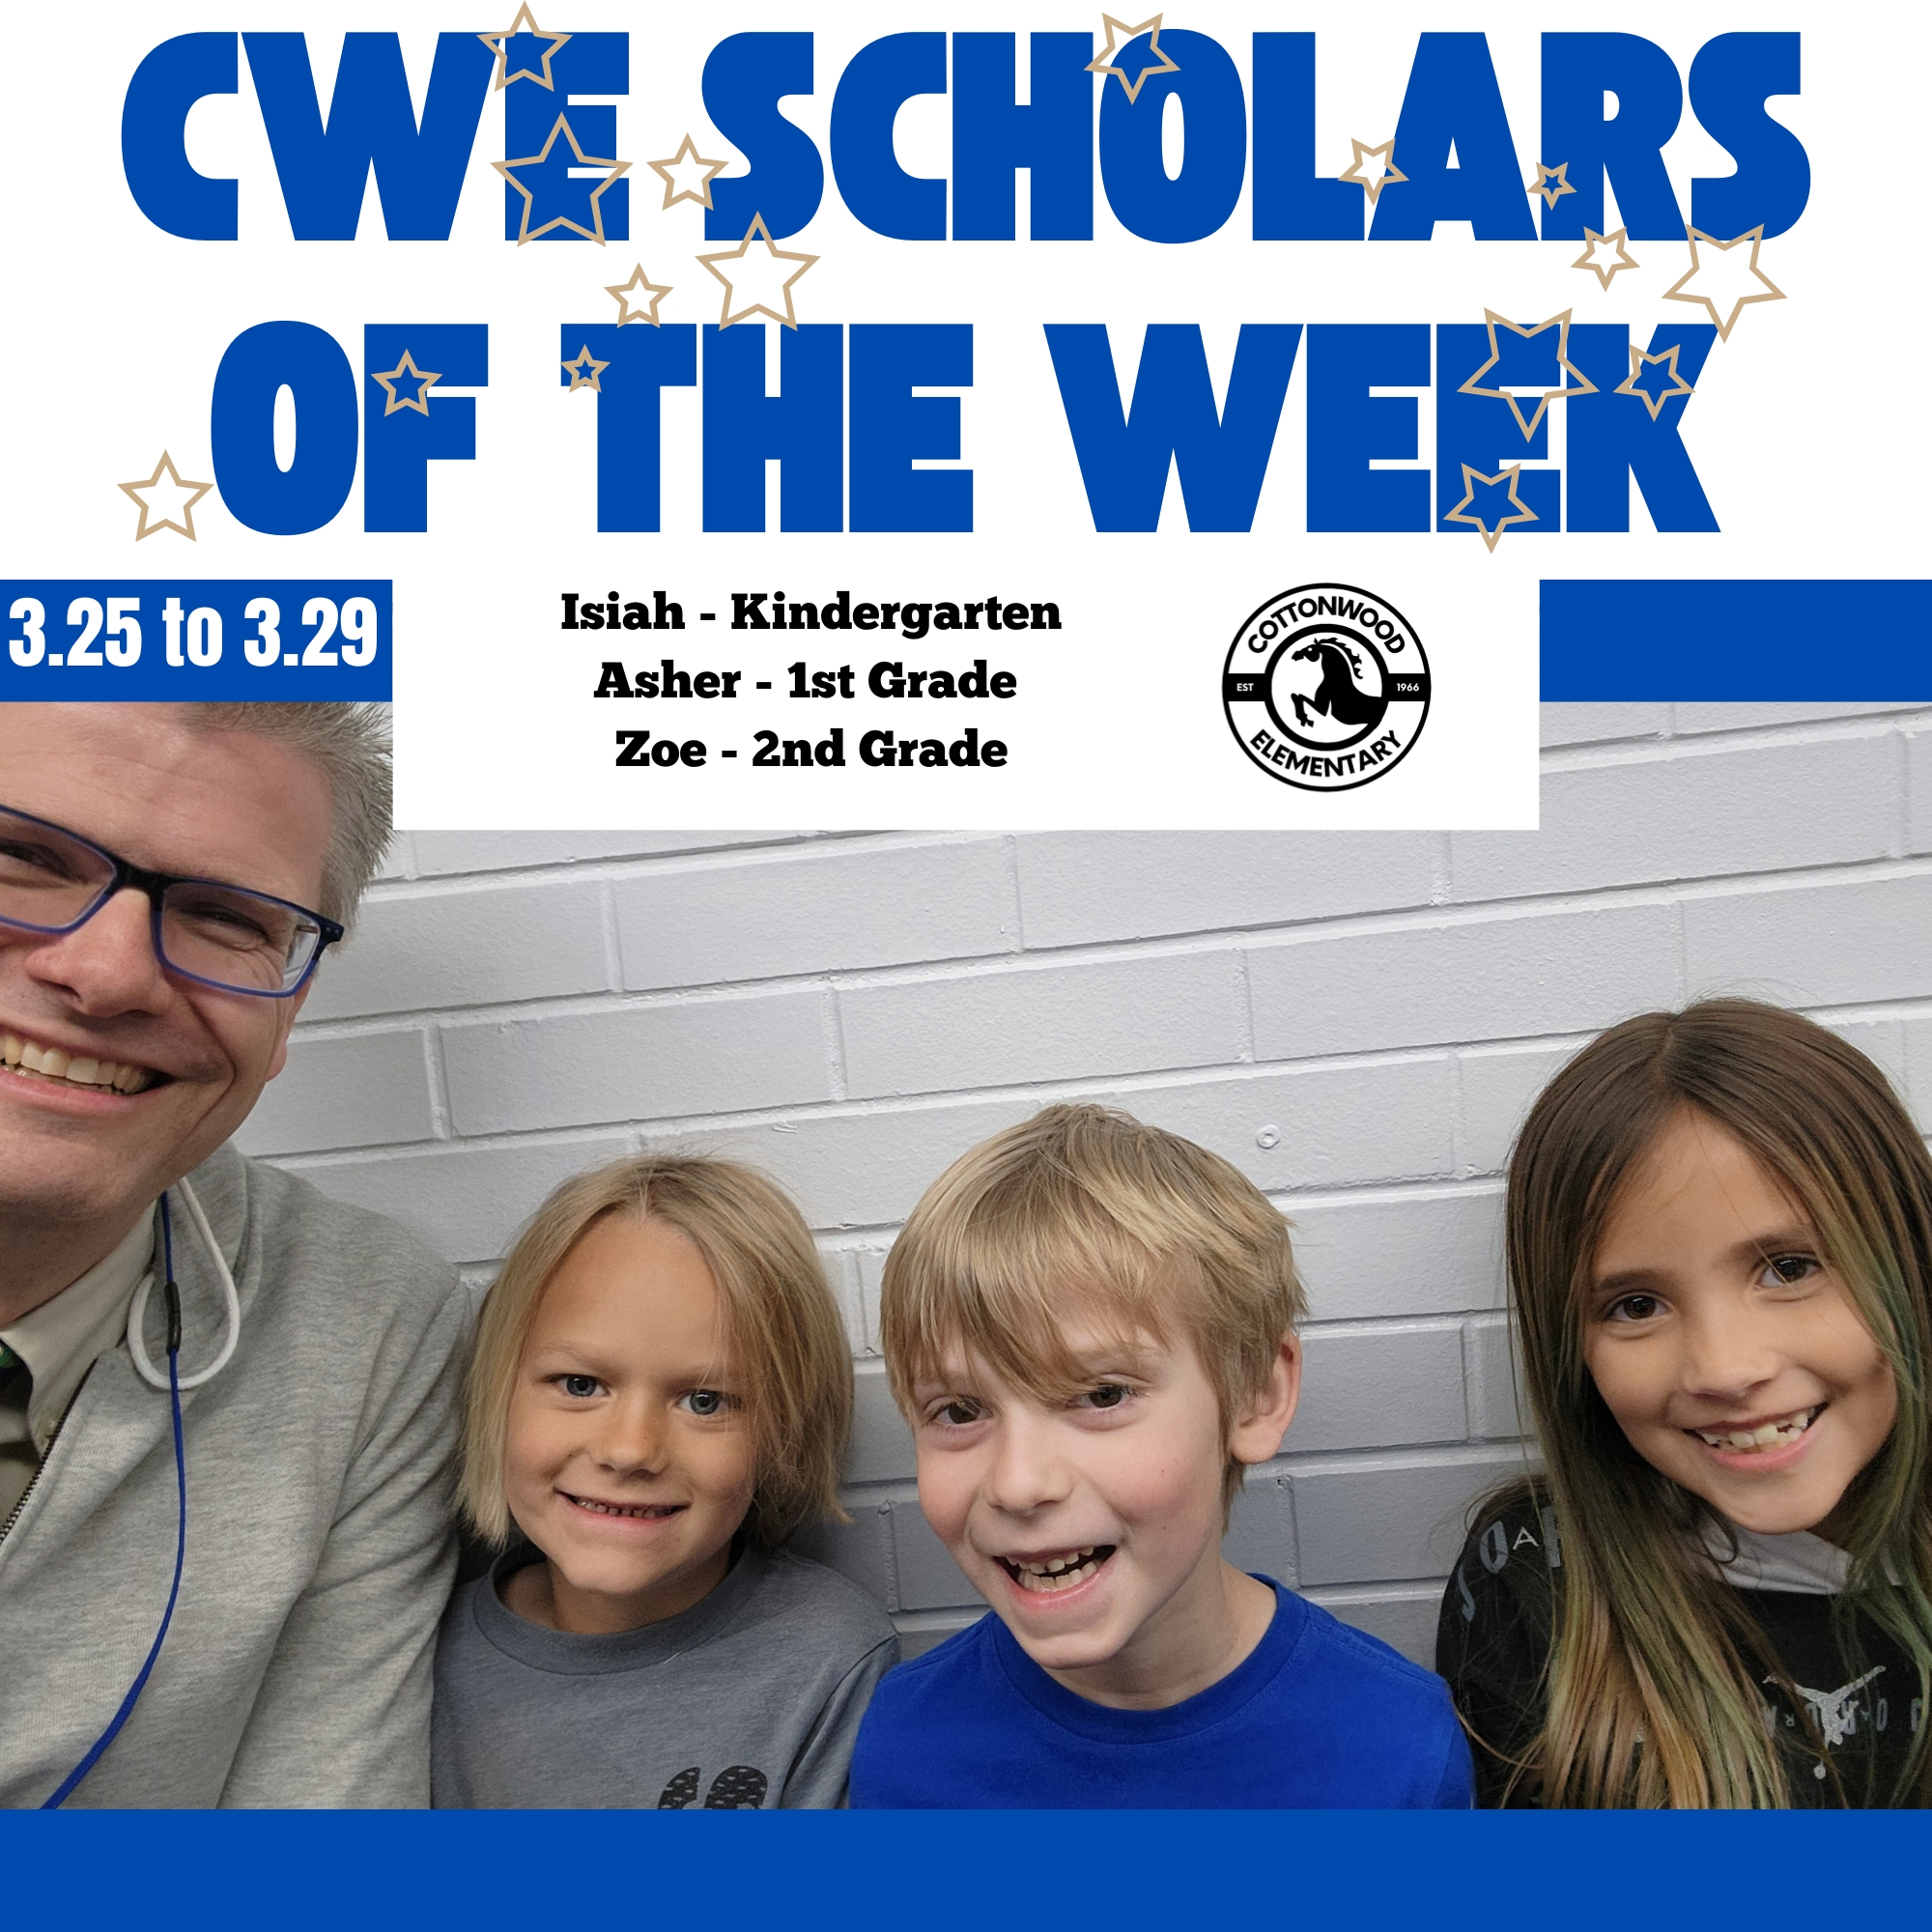 CWE-Scholars-of-the-Week-3.25-to-3.29.jpg